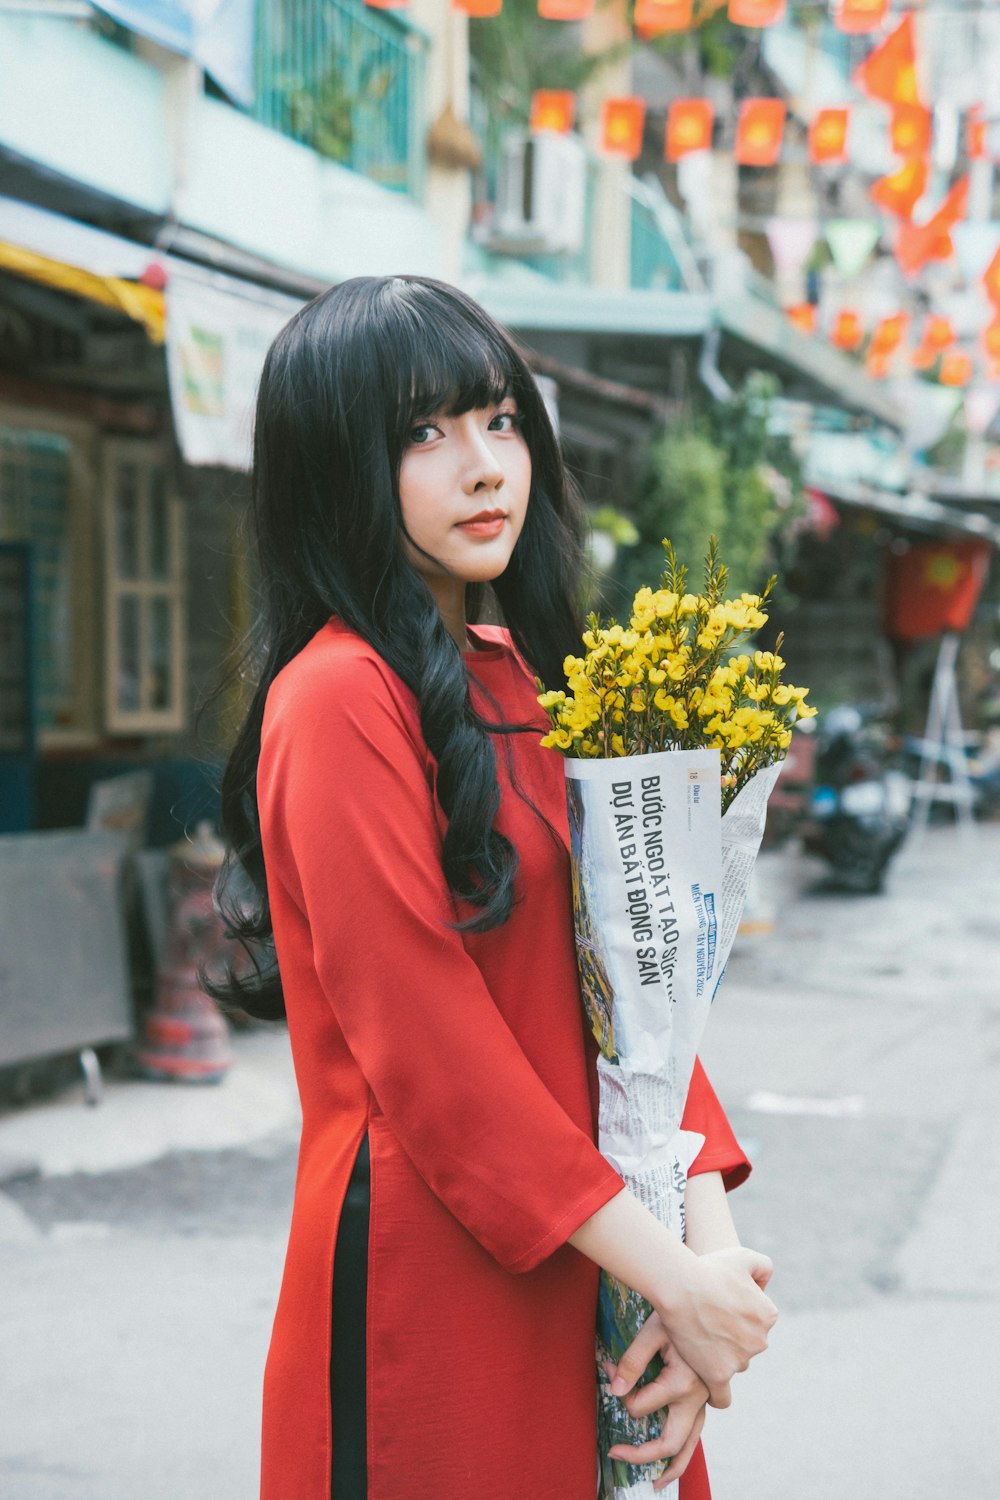 una donna in un vestito rosso che tiene un mazzo di fiori